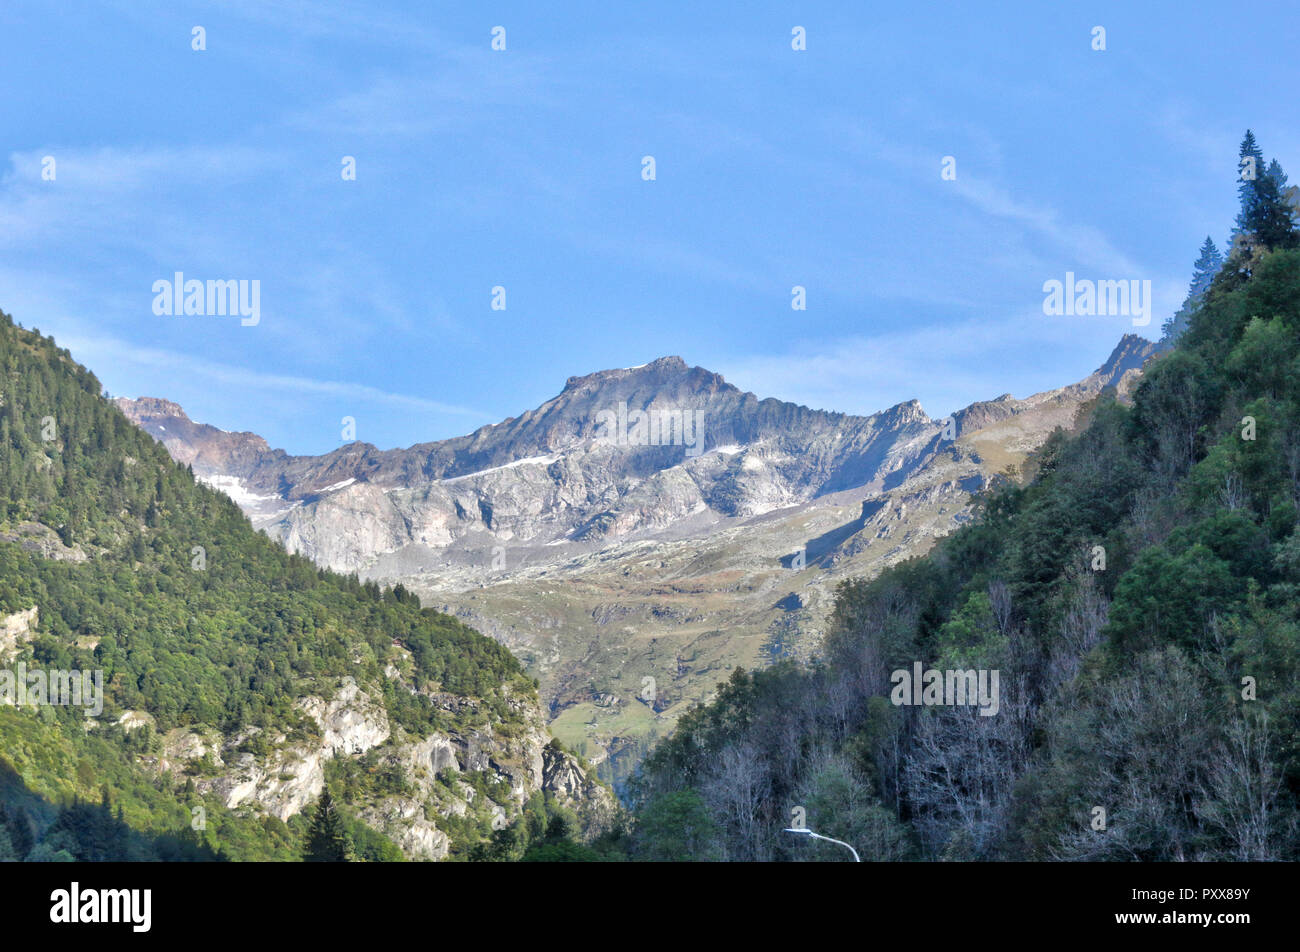 Eine Landschaft von blauen bewölkten Himmel, hohe Berge, Tanne und Kiefer Wälder und grüne Wiesen und Weiden im Val d'Otro, Region Piemont, Alpen, Italien Stockfoto